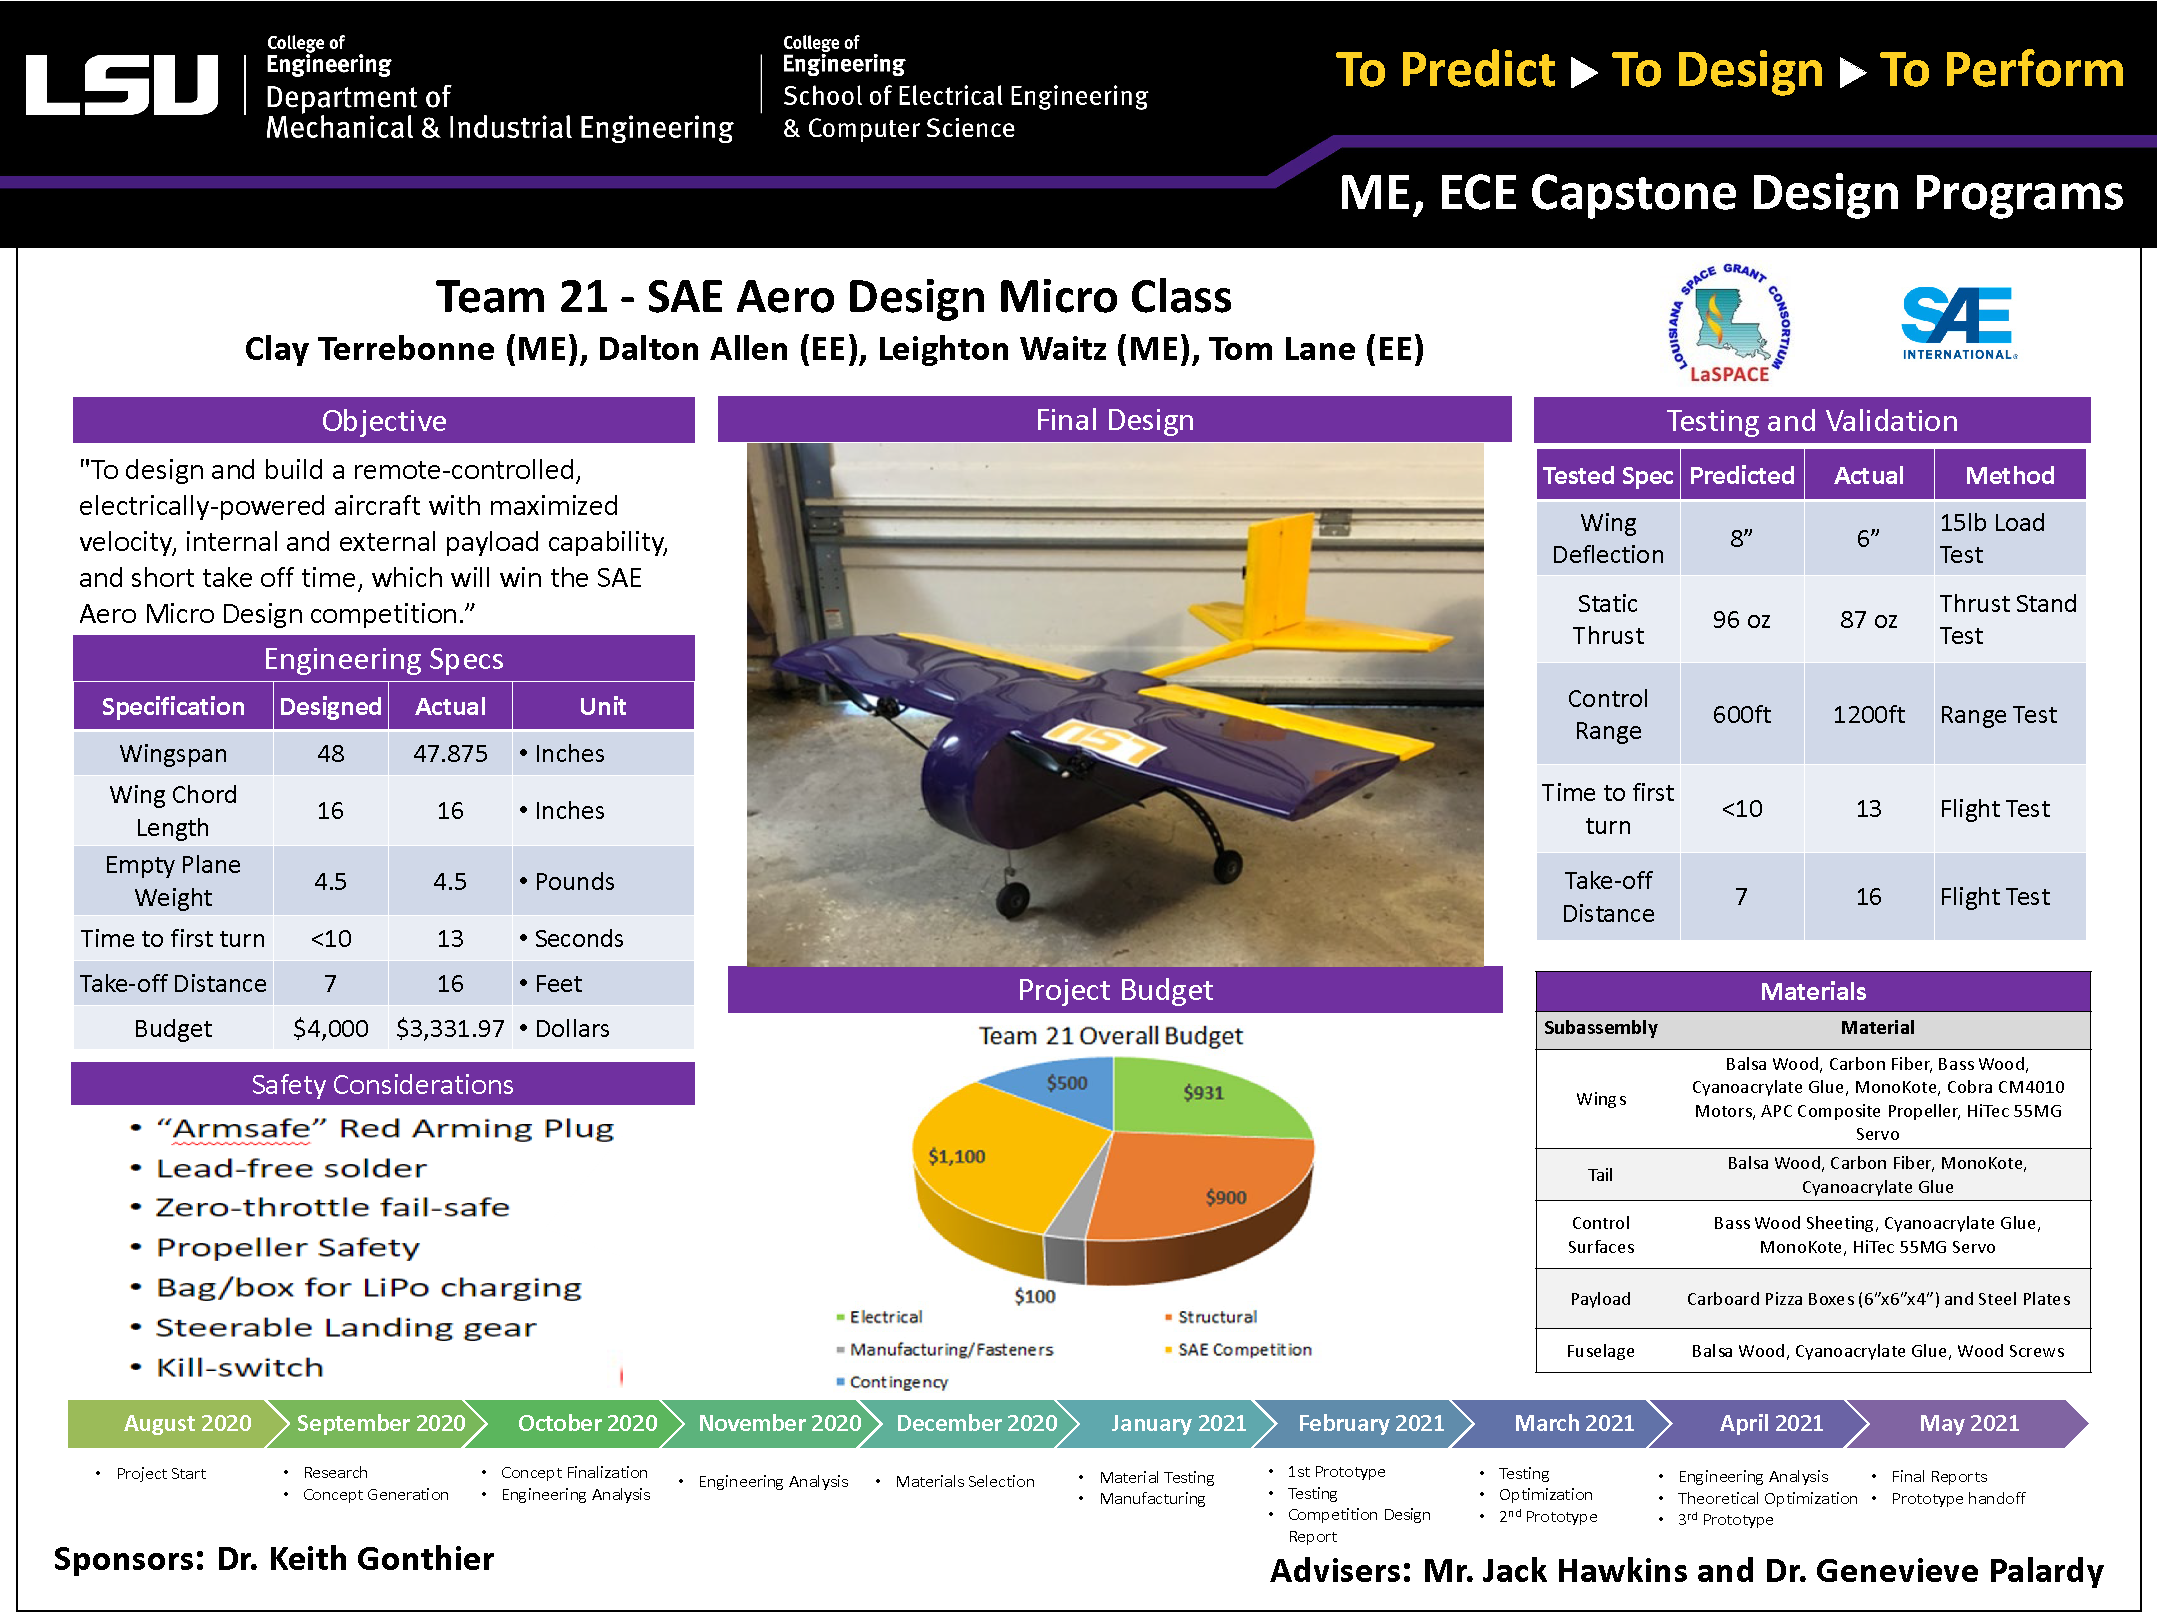 Project 21: SAE Aero Design (Micro Class) (2021)